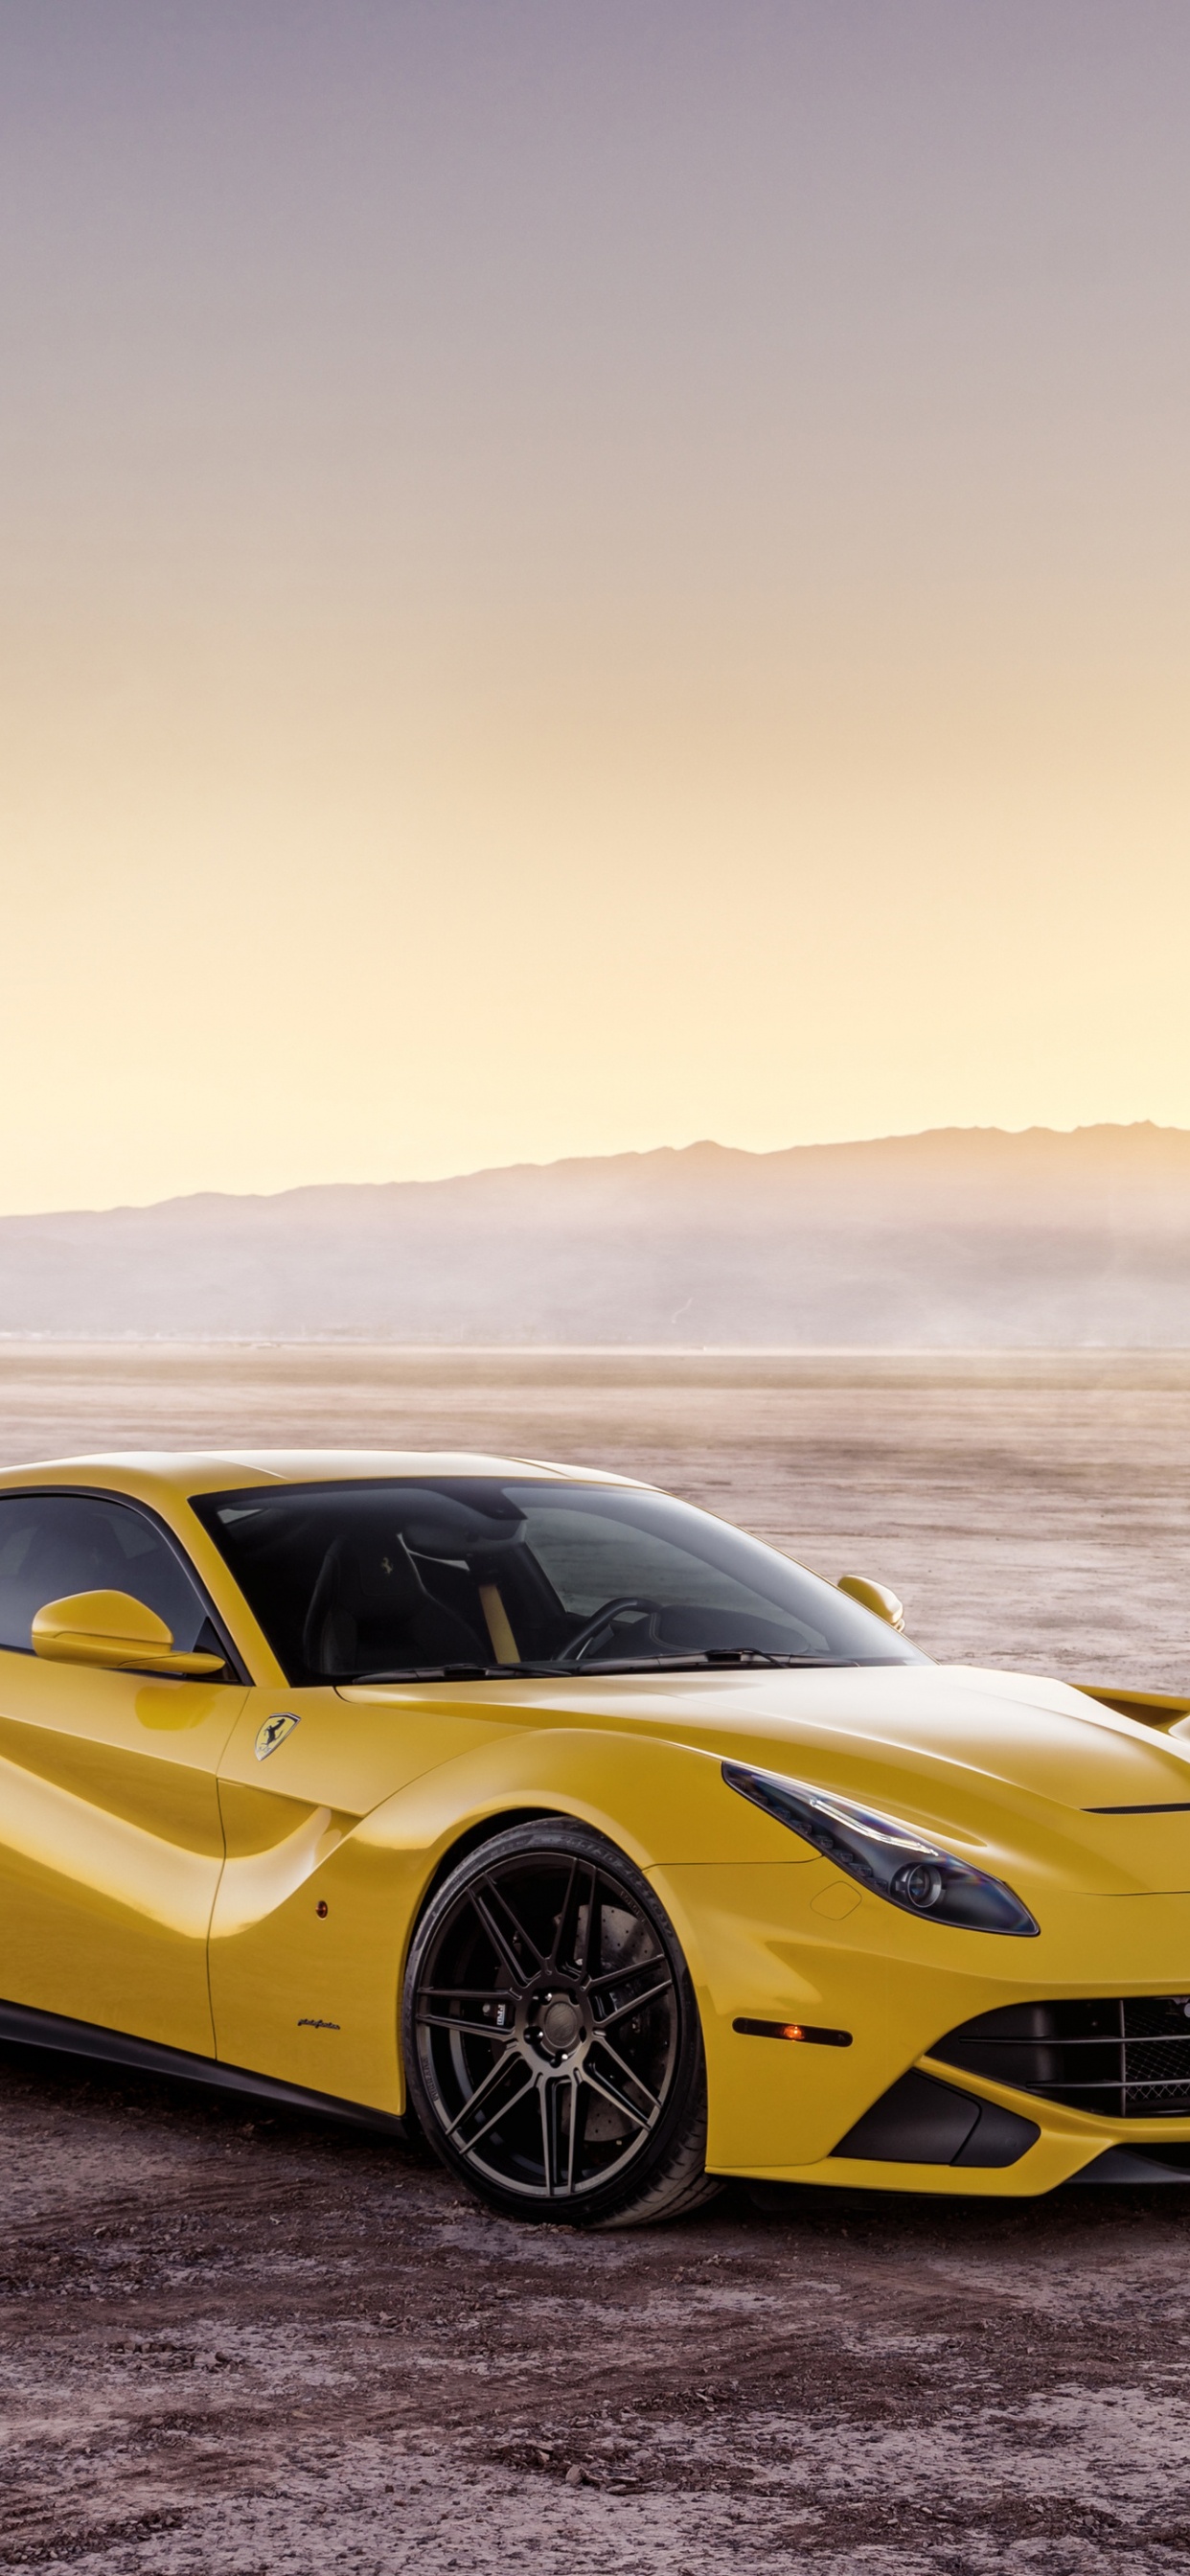 Ferrari, 超级跑车, 黄色的, 法拉利的加利福尼亚州, 法拉利fxx 壁纸 1242x2688 允许